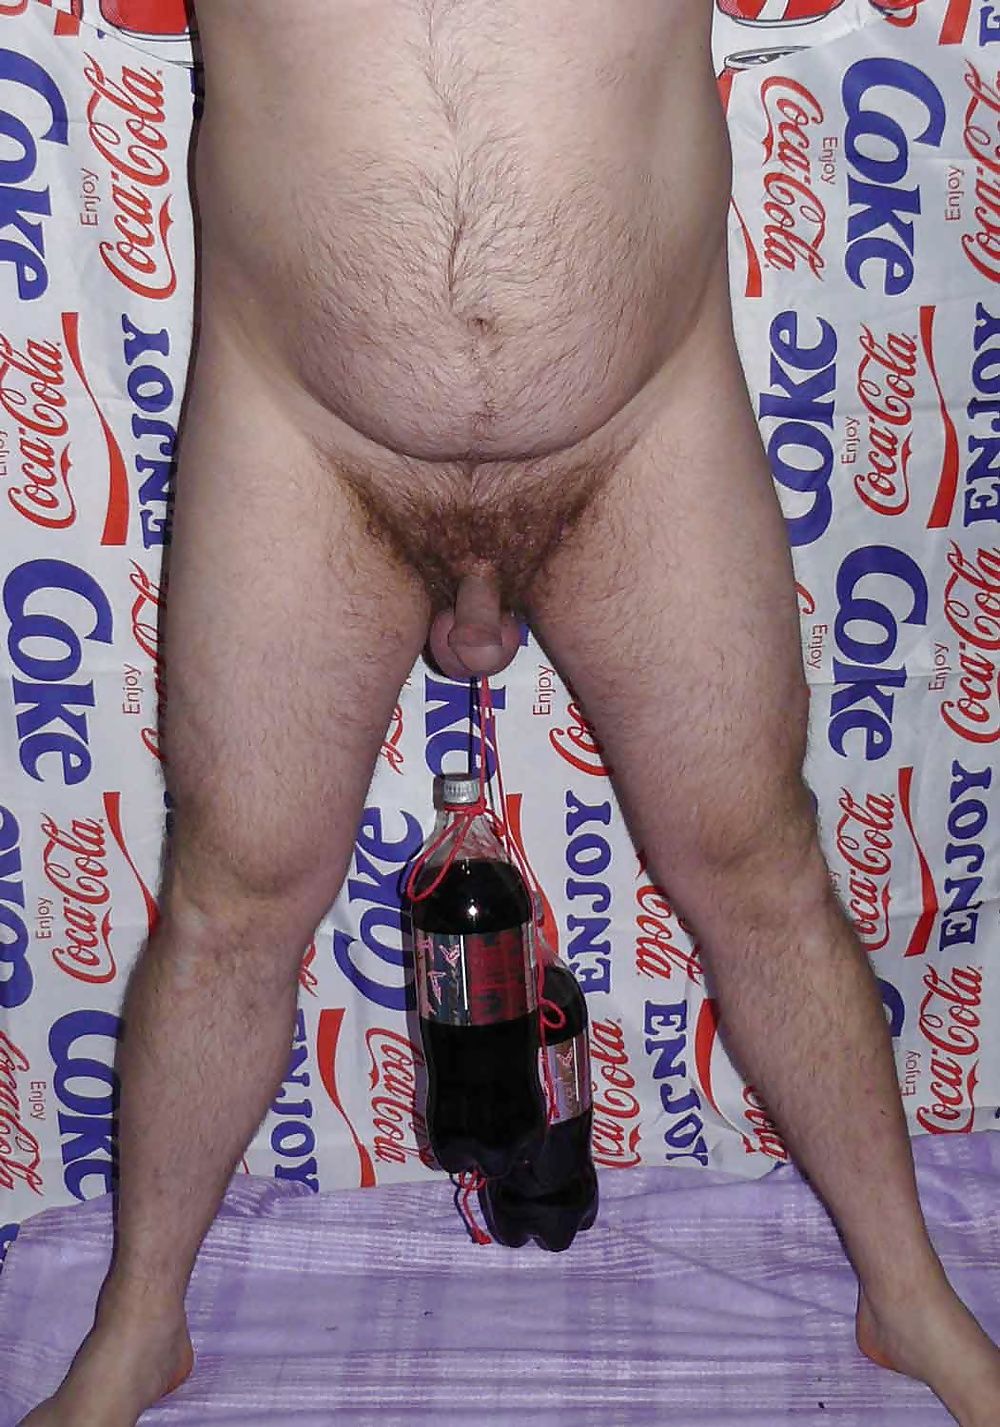 CBT coca cola #8